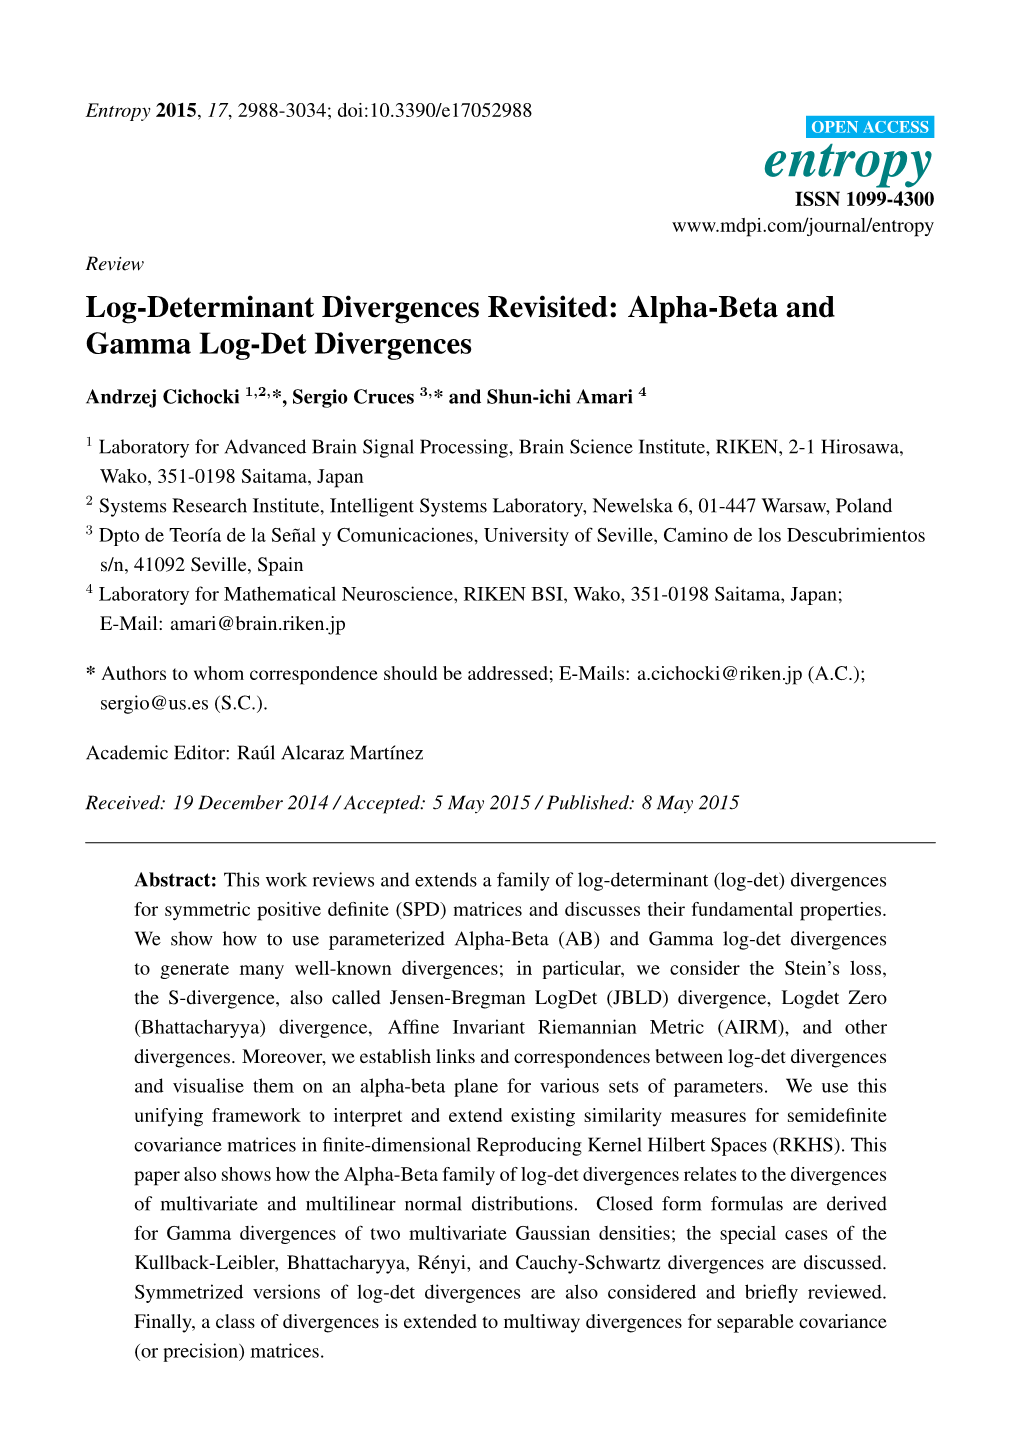 Log-Determinant Divergences Revisited: Alpha-Beta and Gamma Log-Det Divergences